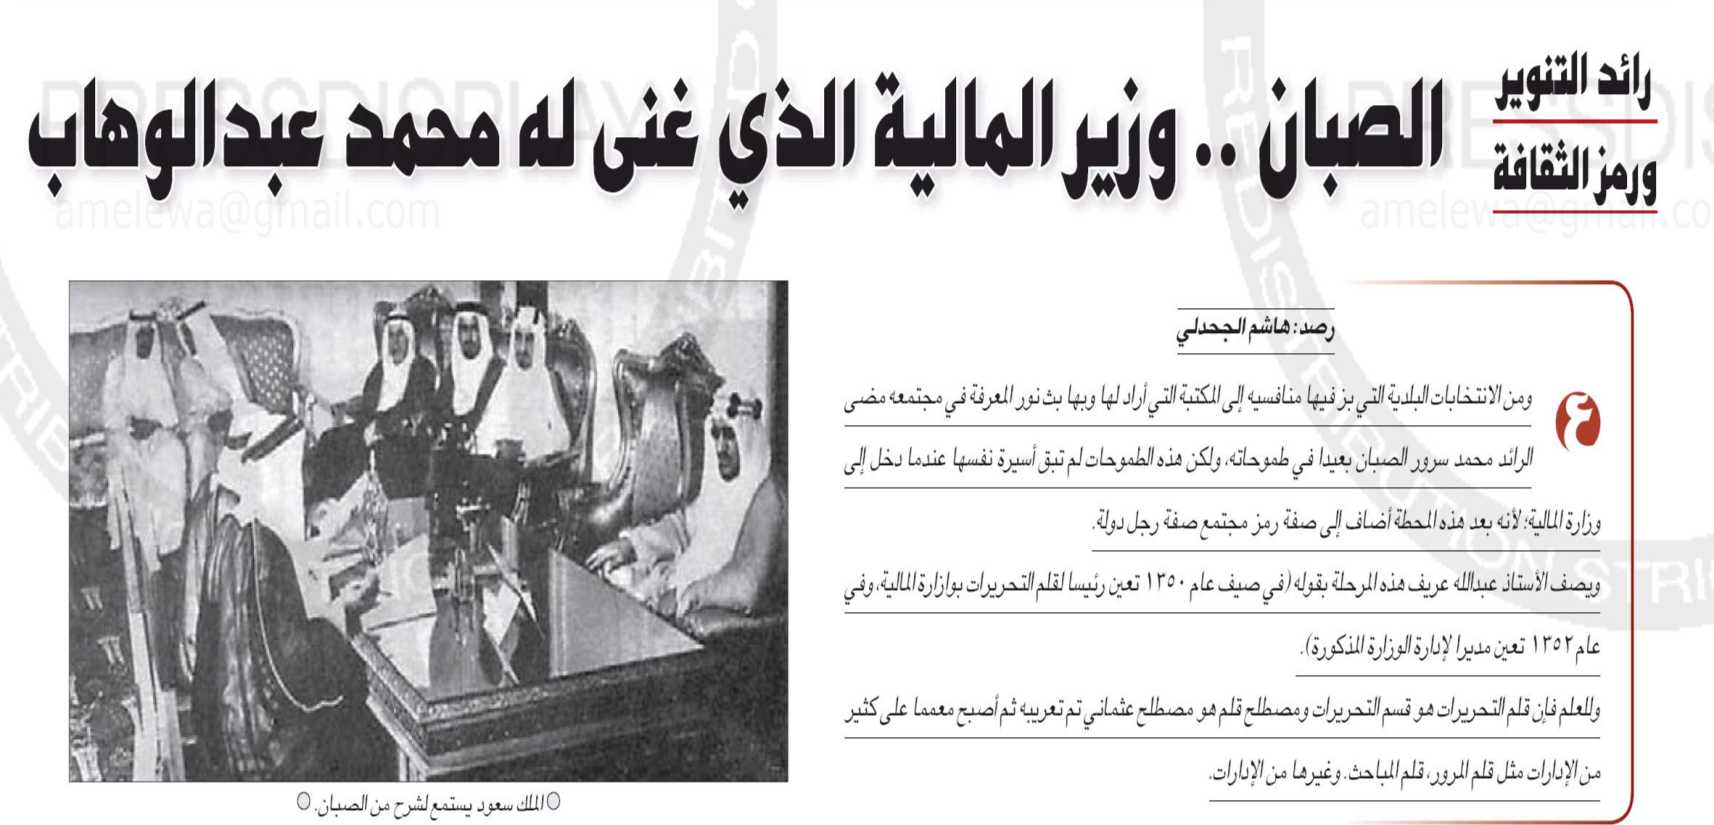 تأسست دارة الملك عبدالعزيز بموجب مرسوم ملكي صدر عام